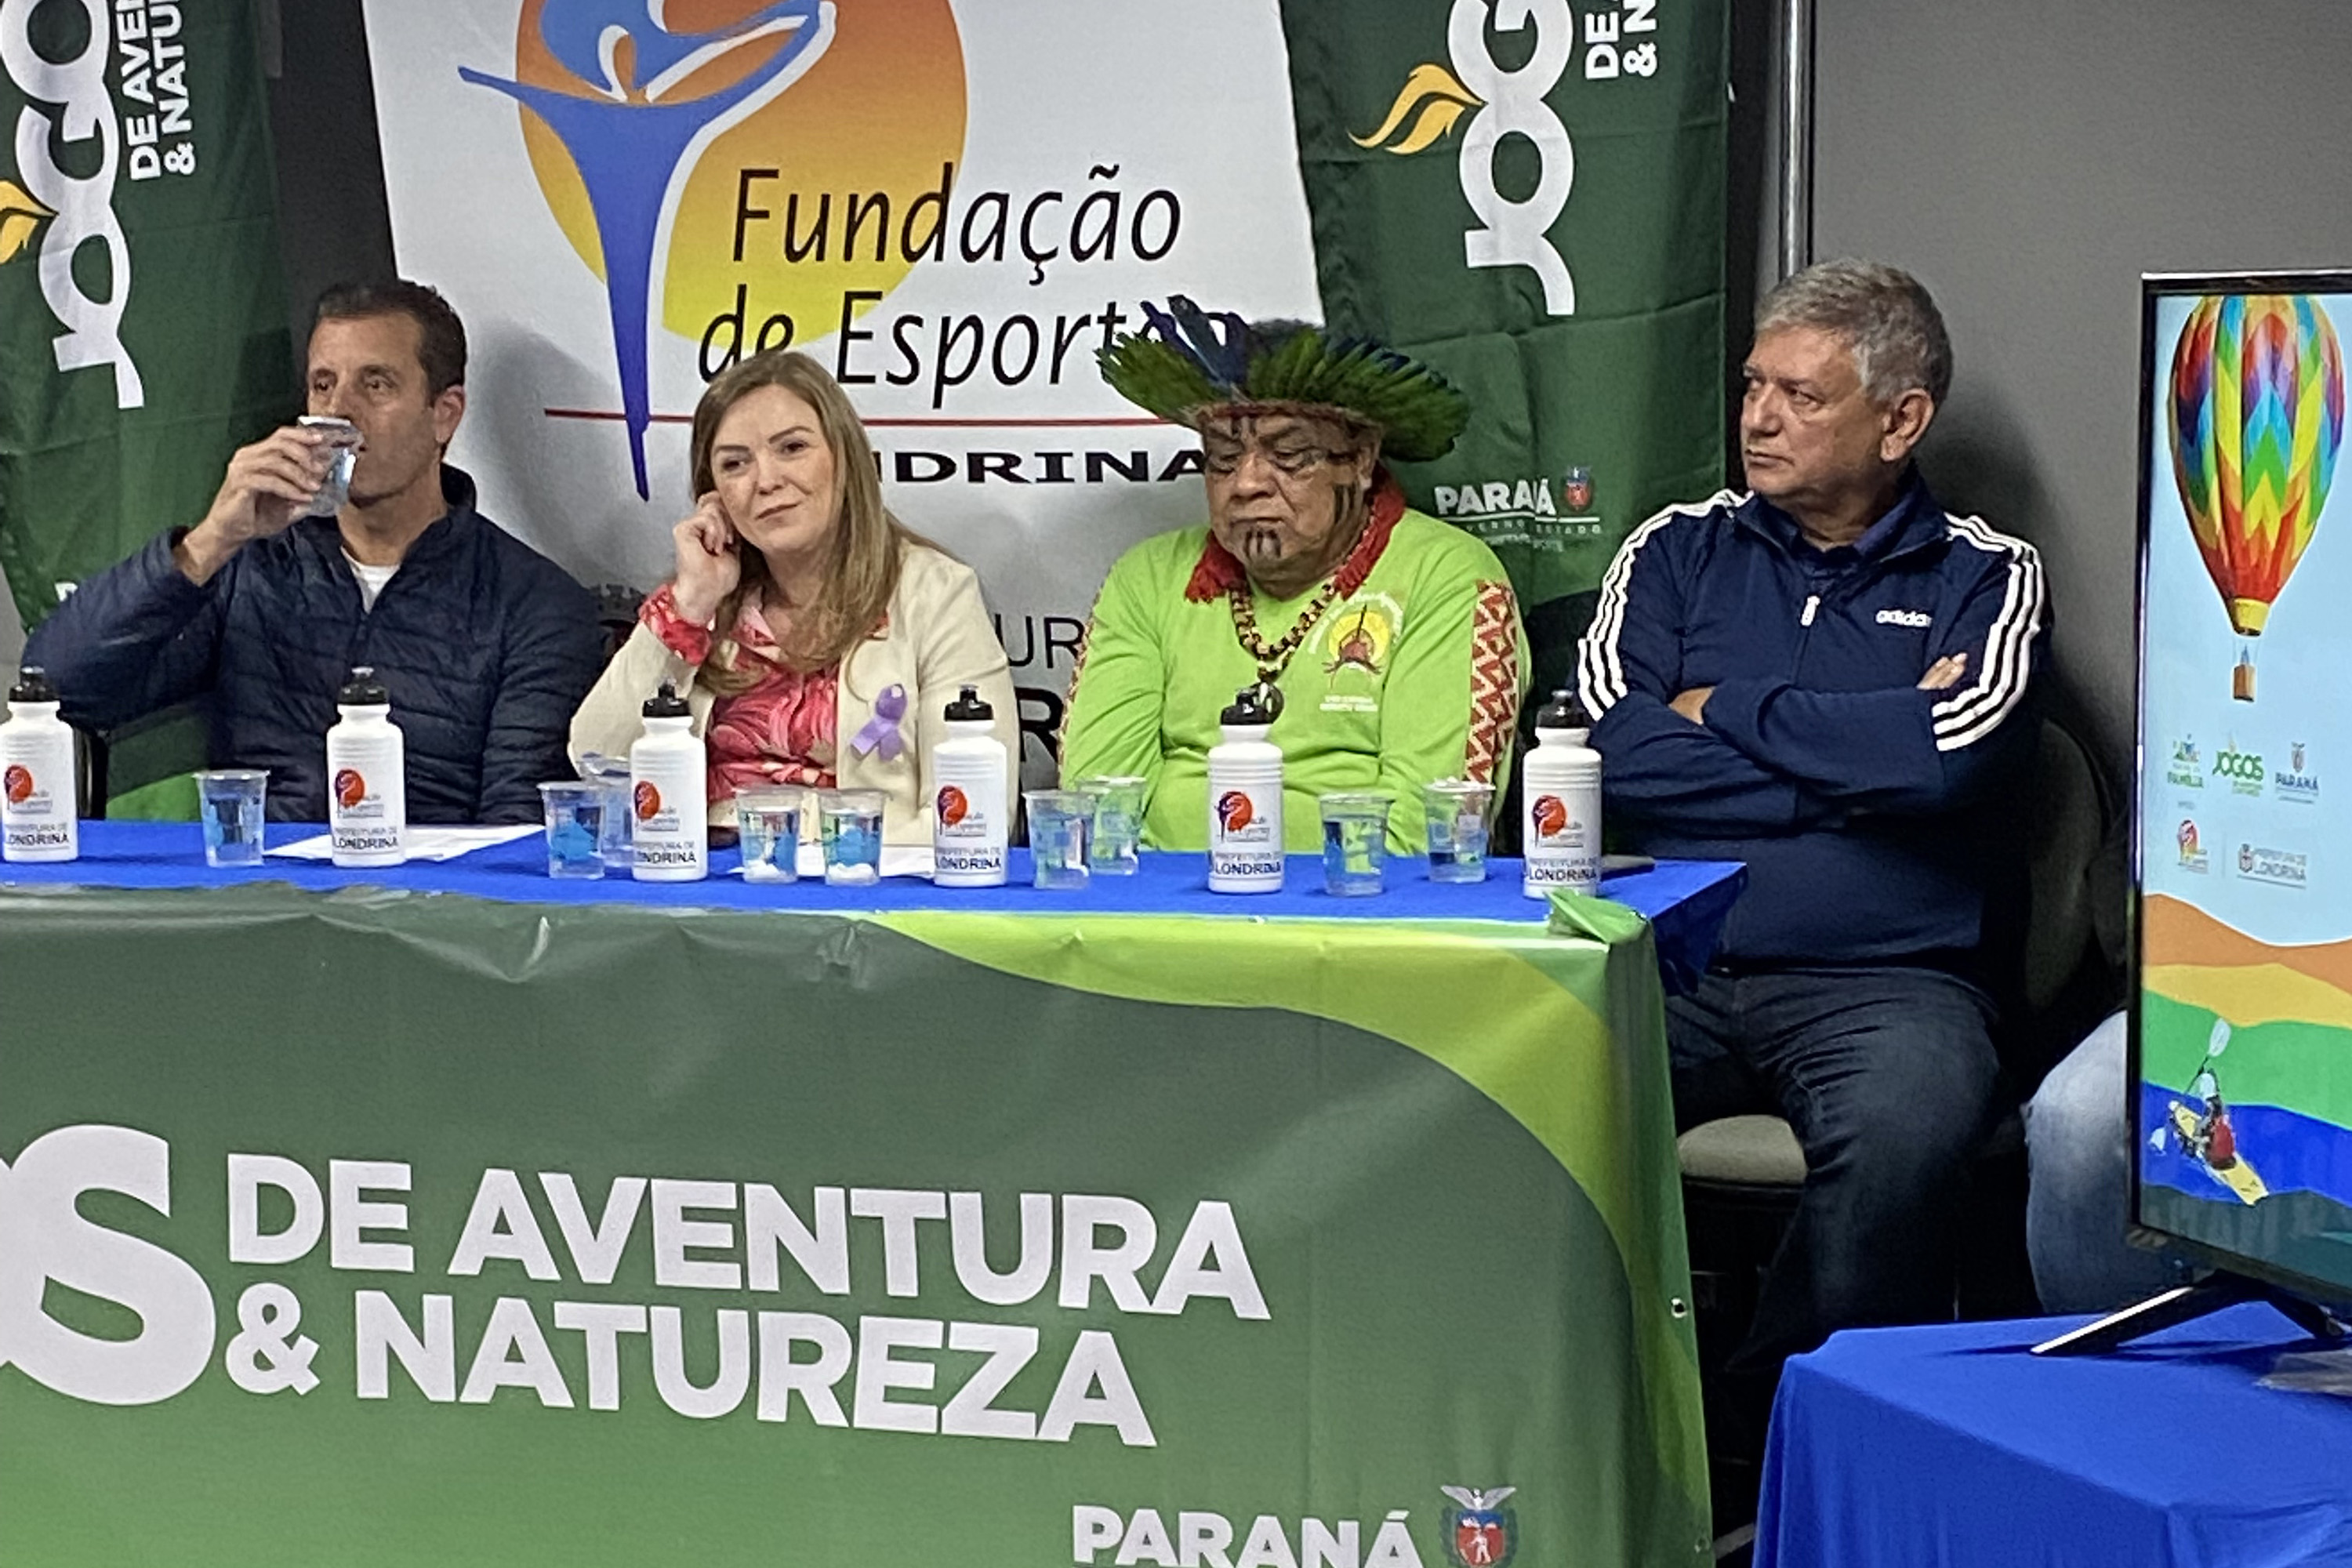 Jogos de Aventura e Natureza começam em junho na região de Londrina